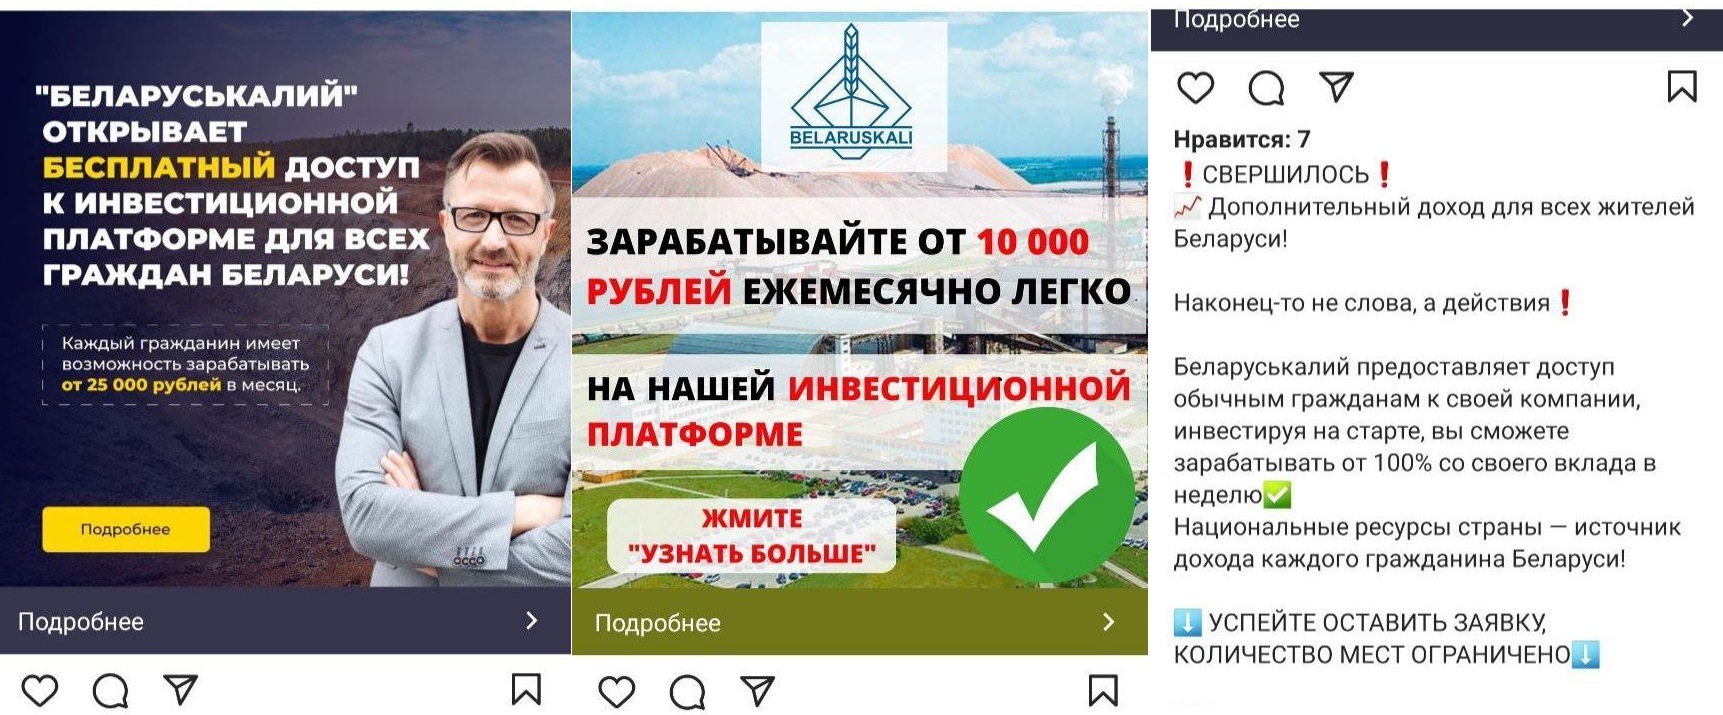 Мошенники пытаются обмануть беларусов с помощью фальшивой инвестплатформы "Беларуськалия"